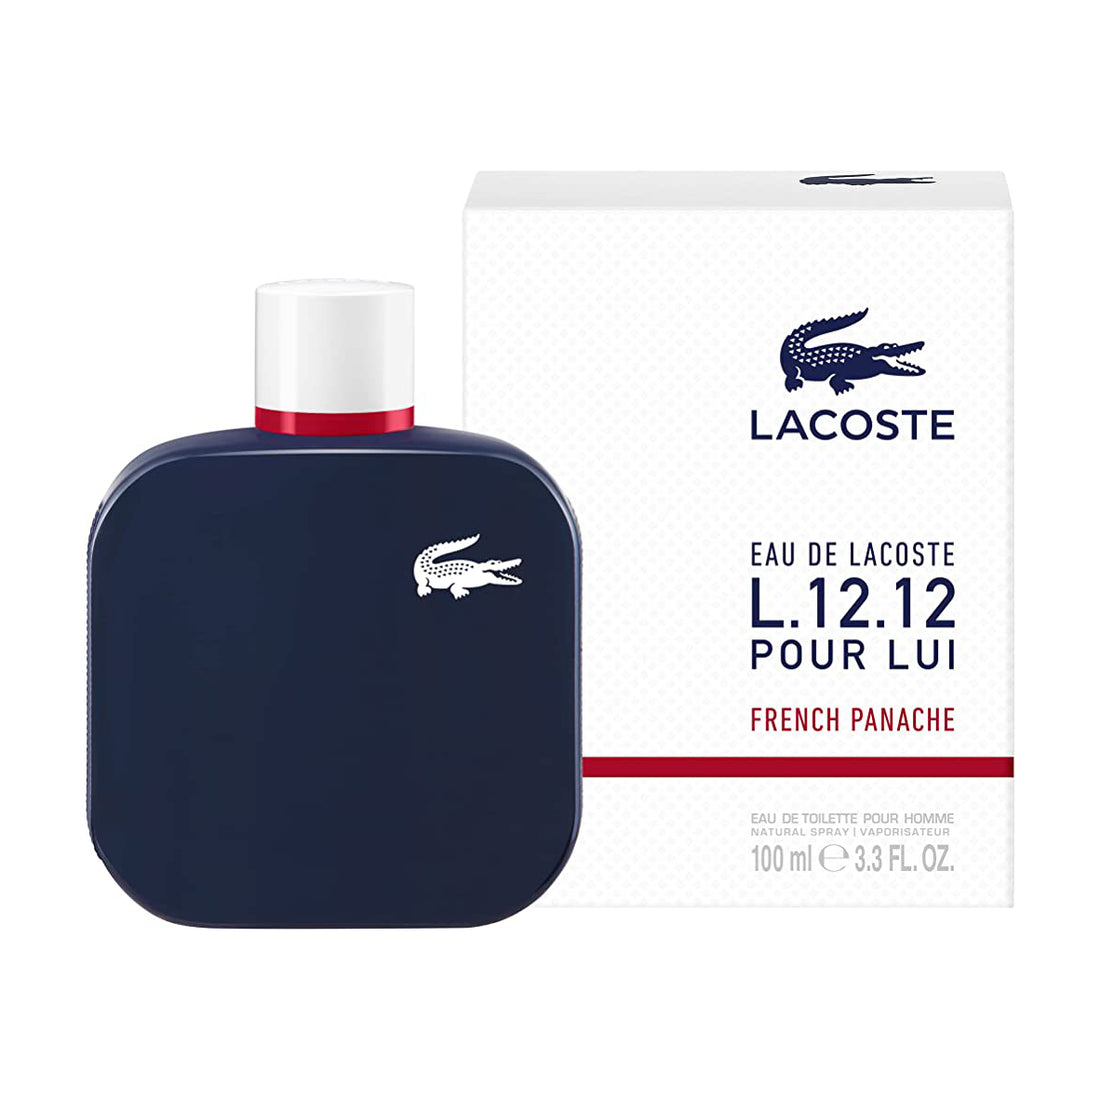 LACOSTE EAU DE LACOSTE L.12.12 FRENCH PANACHE By LACOSTE